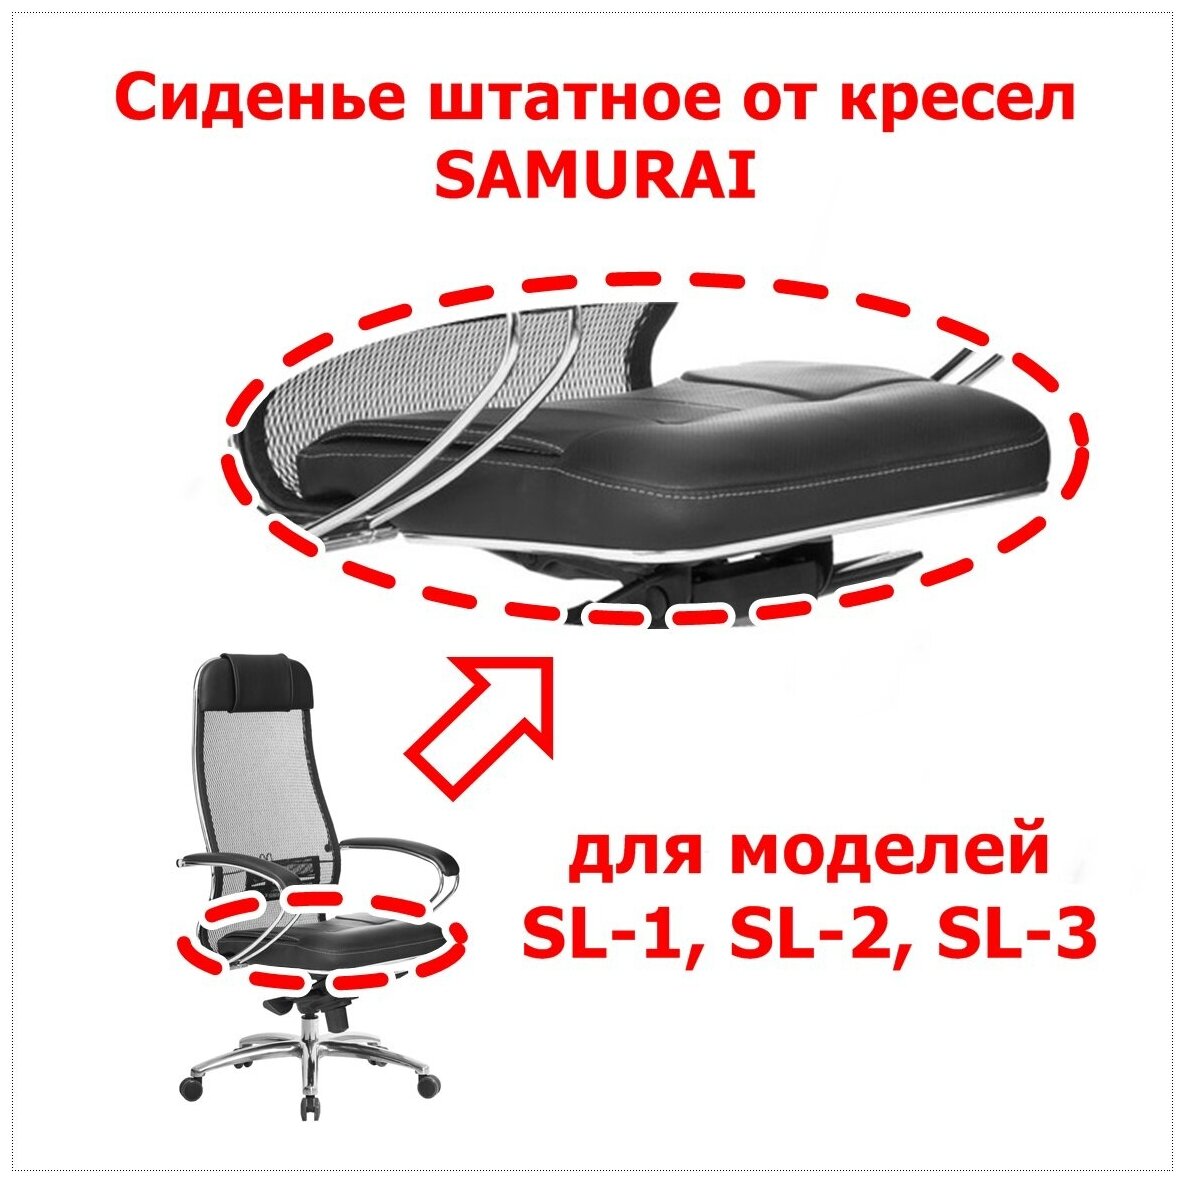 Сиденье штатное от кресла Samurai Метта для моделей SL-1, SL-2, SL-3. Цвет чёрный. Нагрузка до 120 кг.